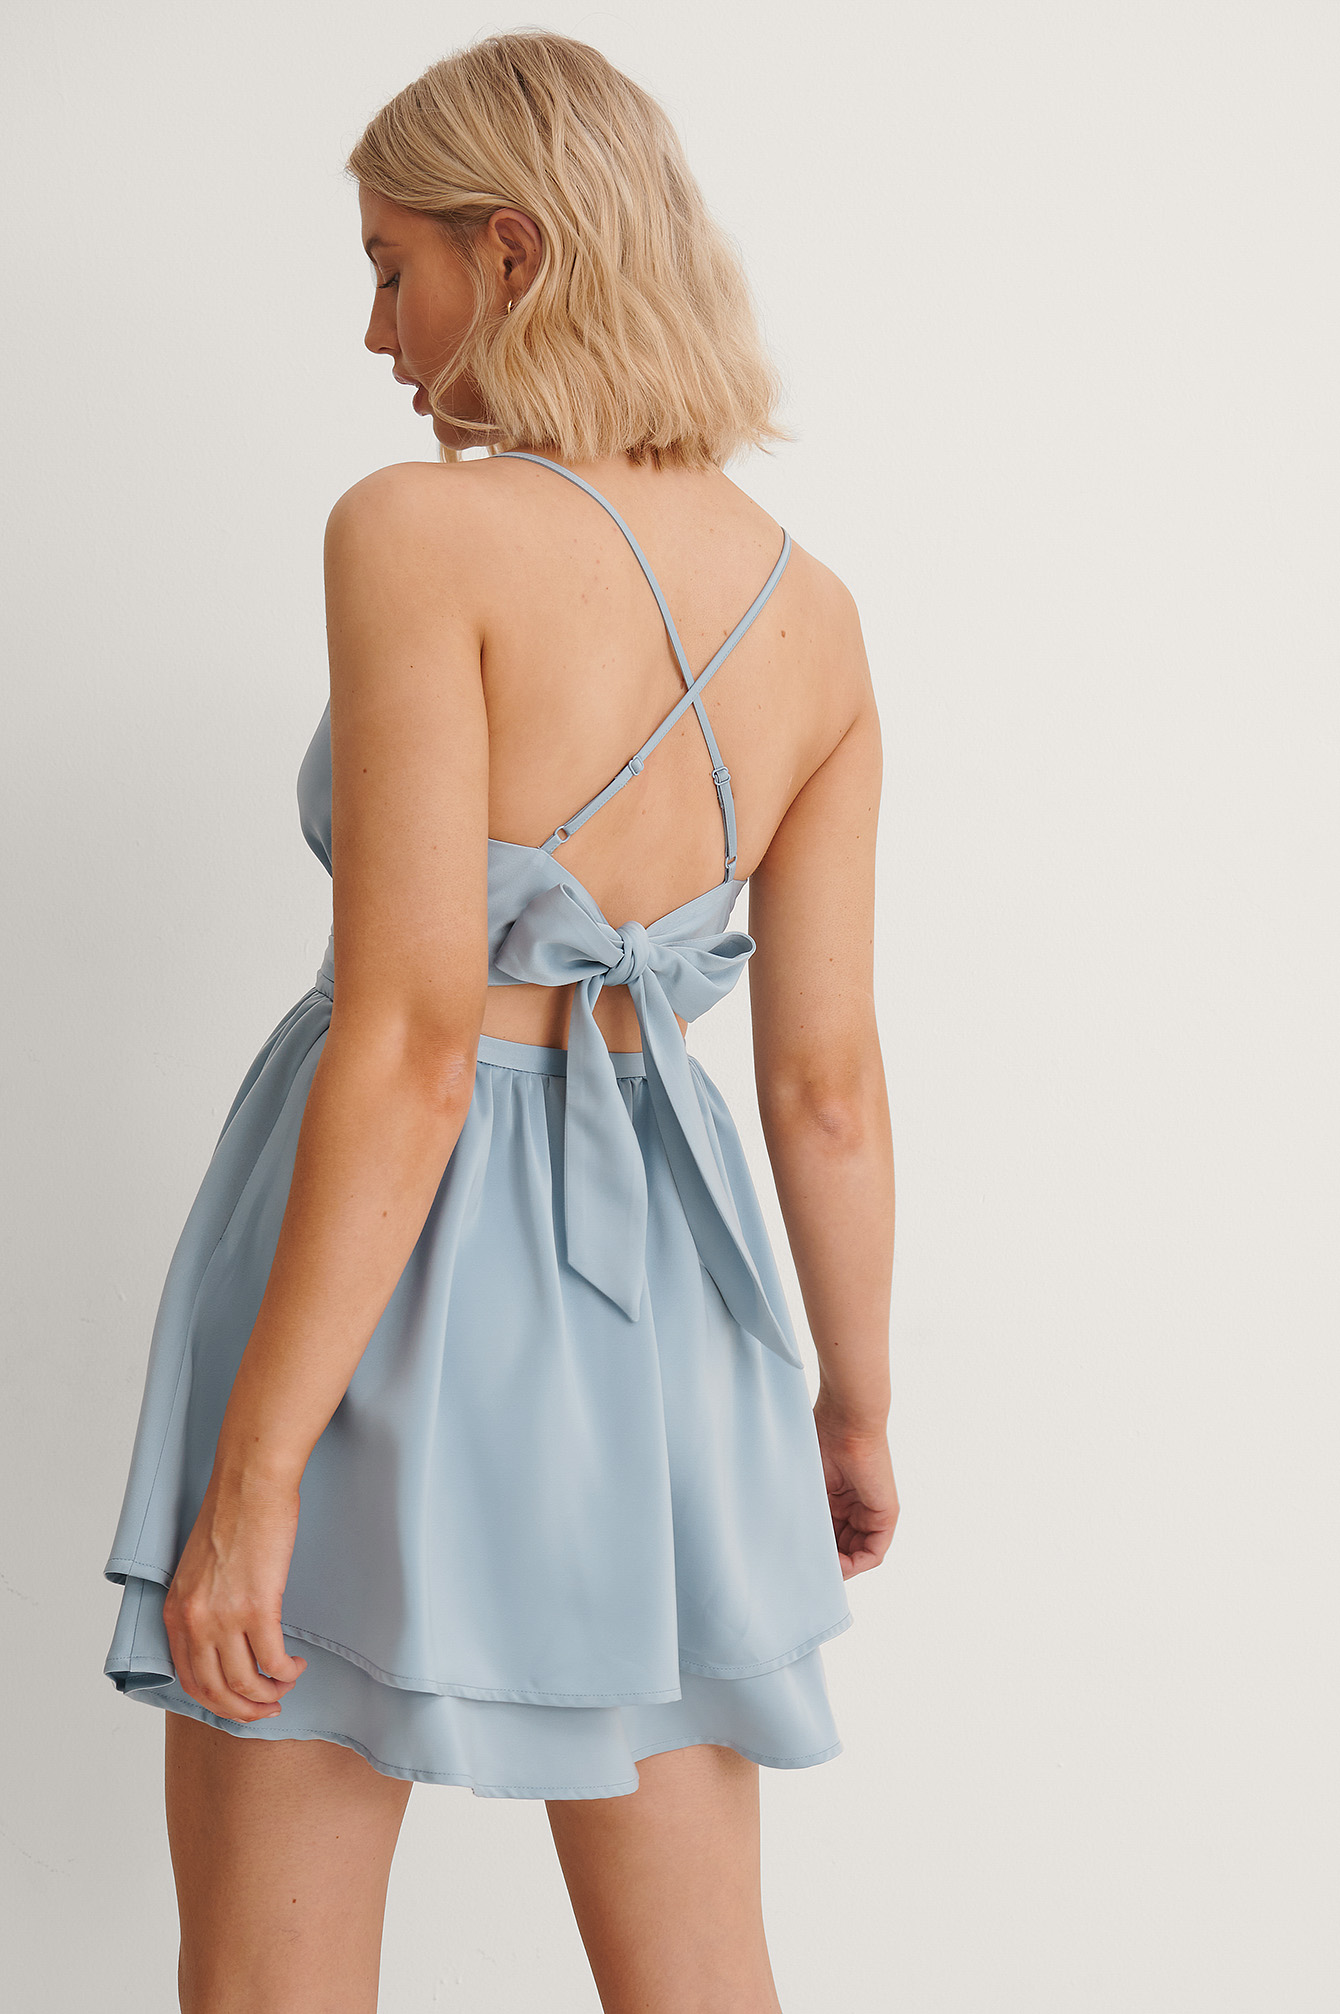 Anika Teller X Na-kd Tied Back Mini Dress - Blue